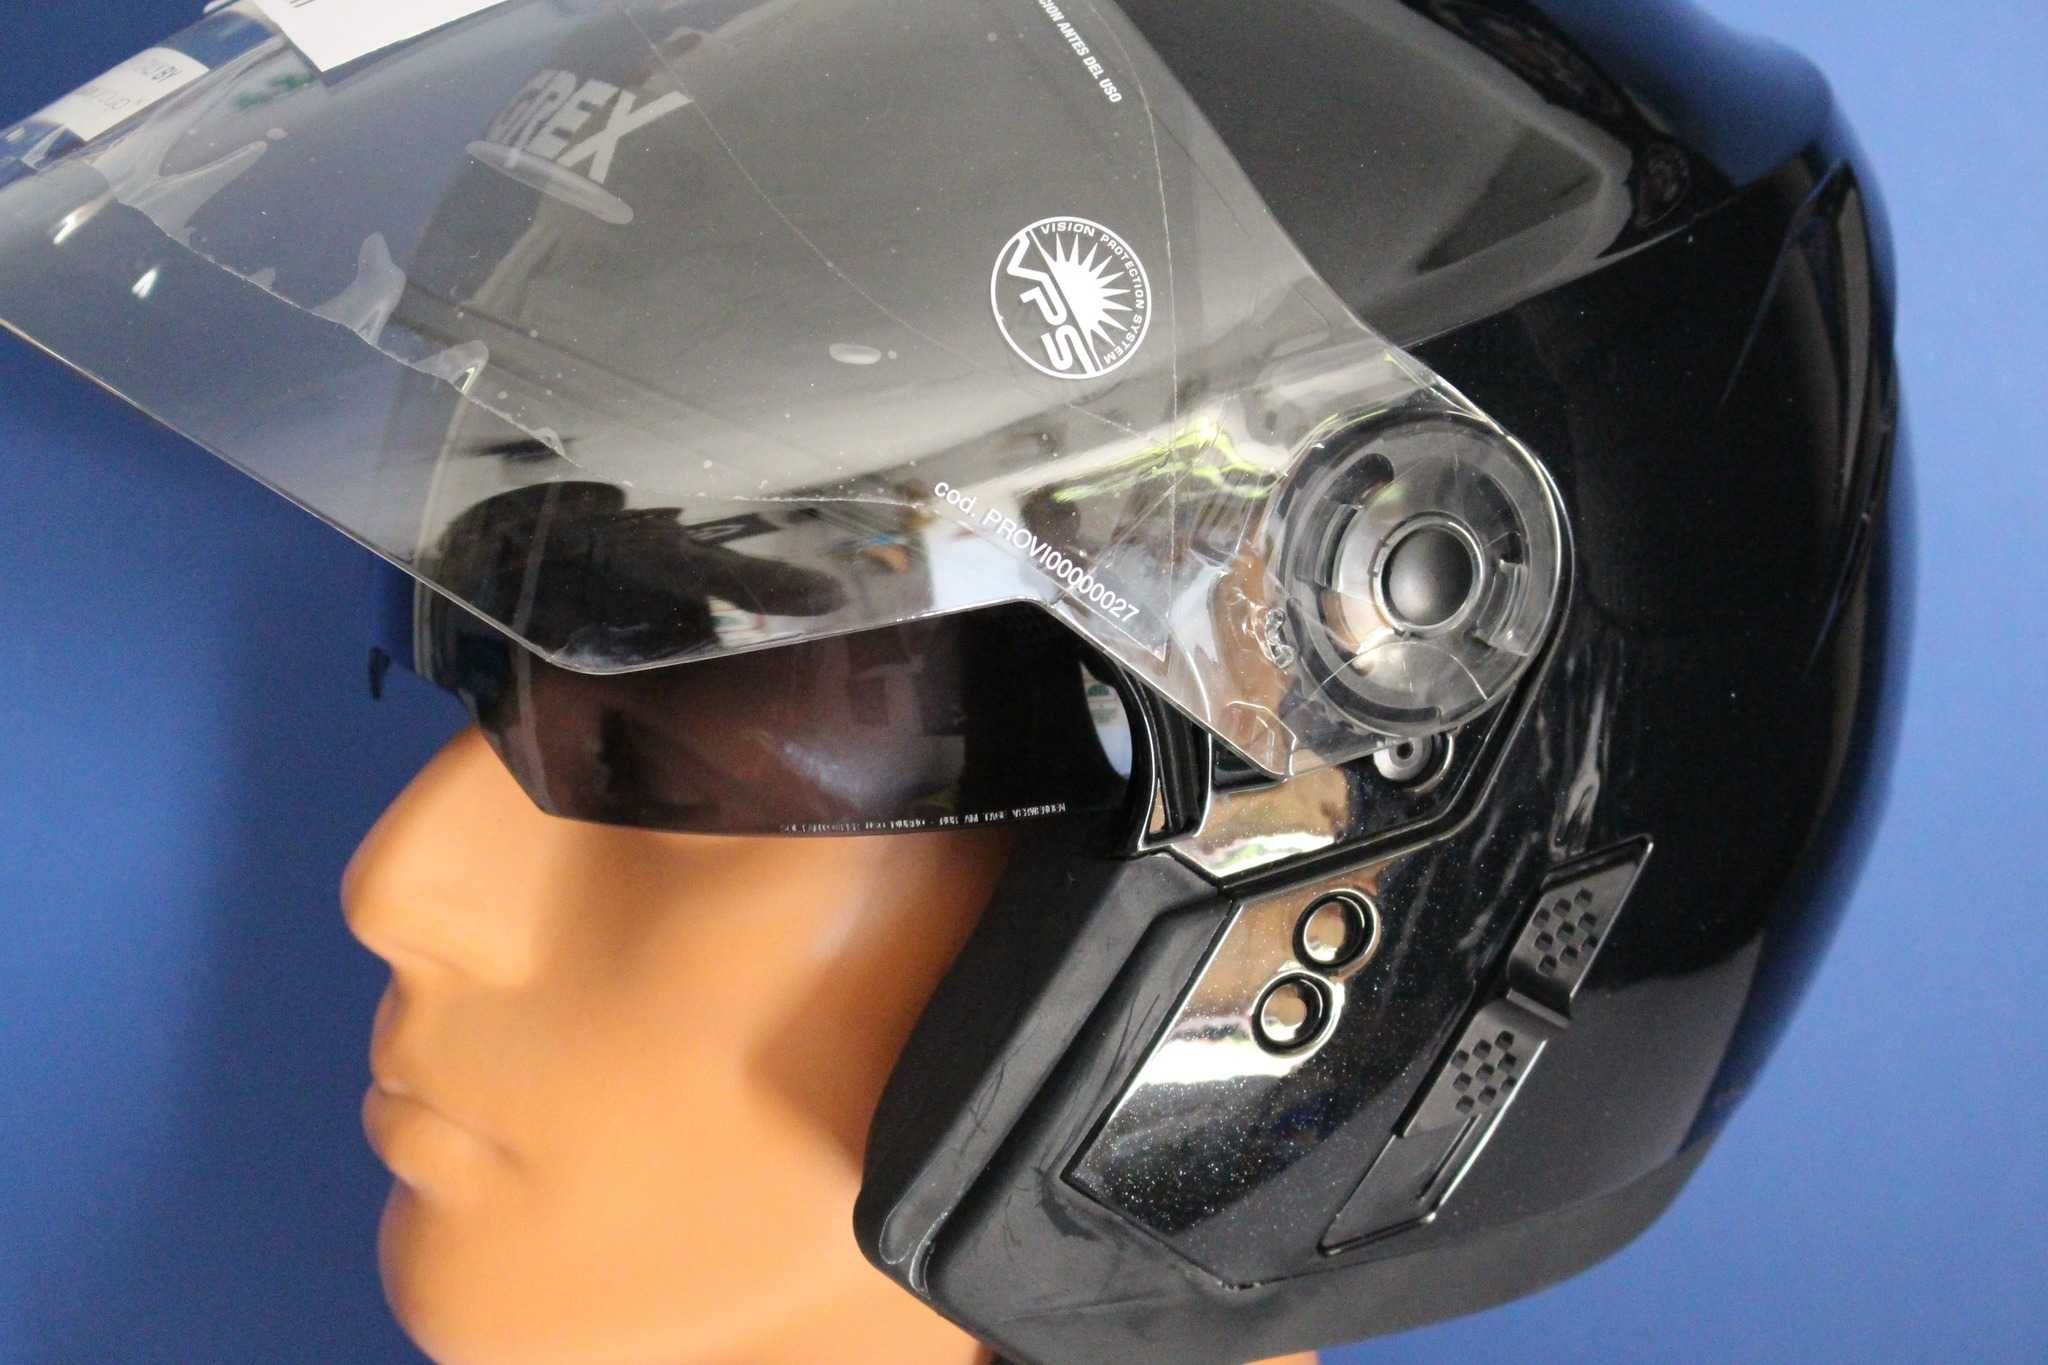 НОВА каска с очила за мотор/скутер на марката Grex